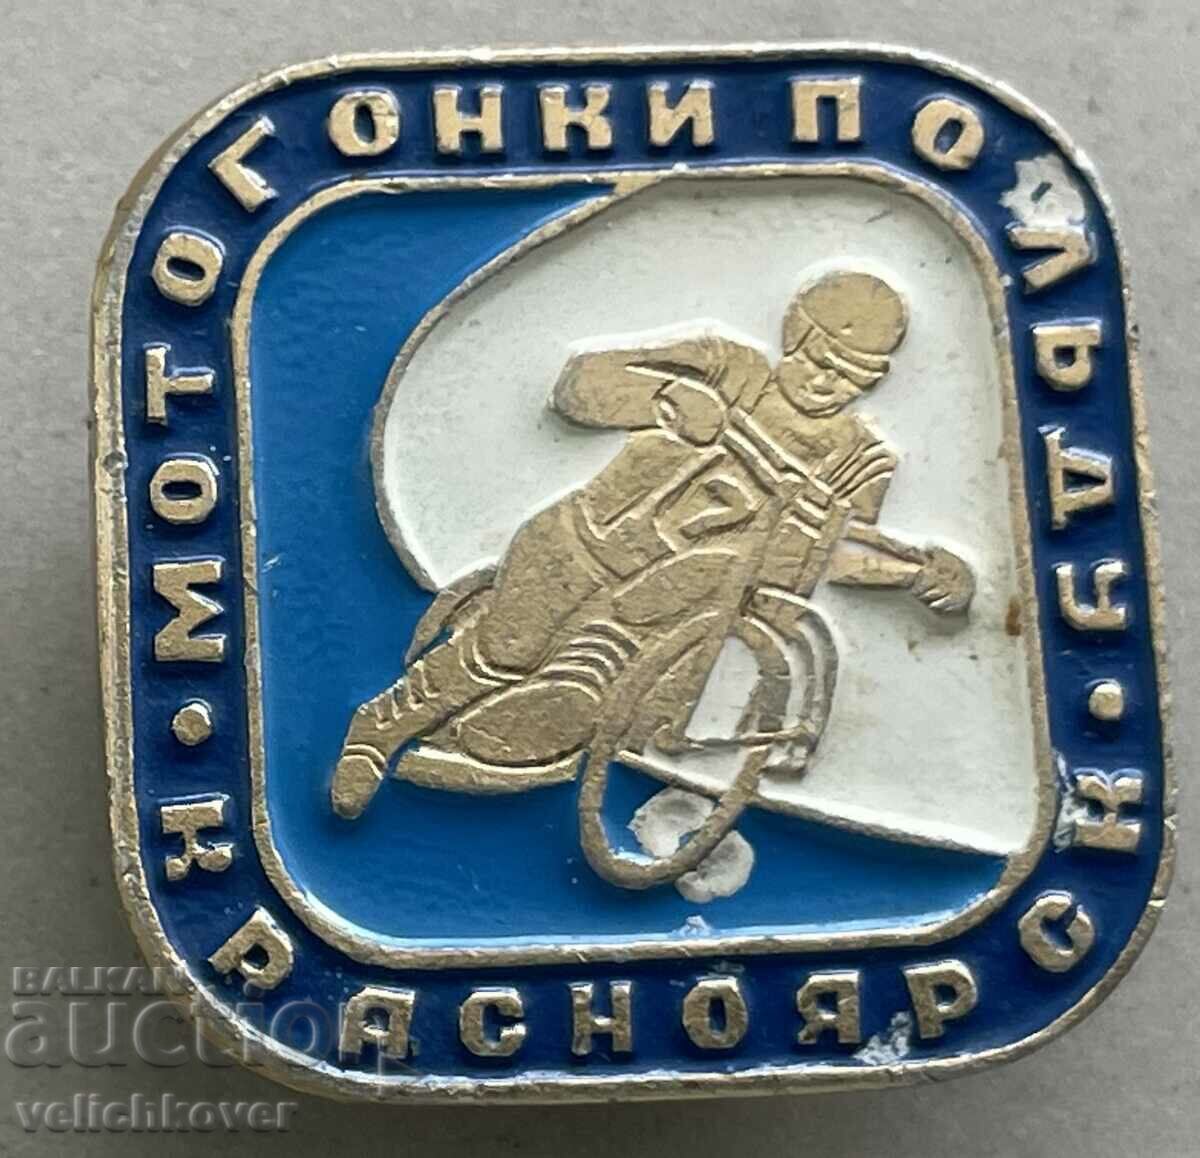 35422 Σήμα ΕΣΣΔ Αγώνας μηχανοκίνητου αγώνα στην παγωμένη πόλη του Κρασνοντάρ